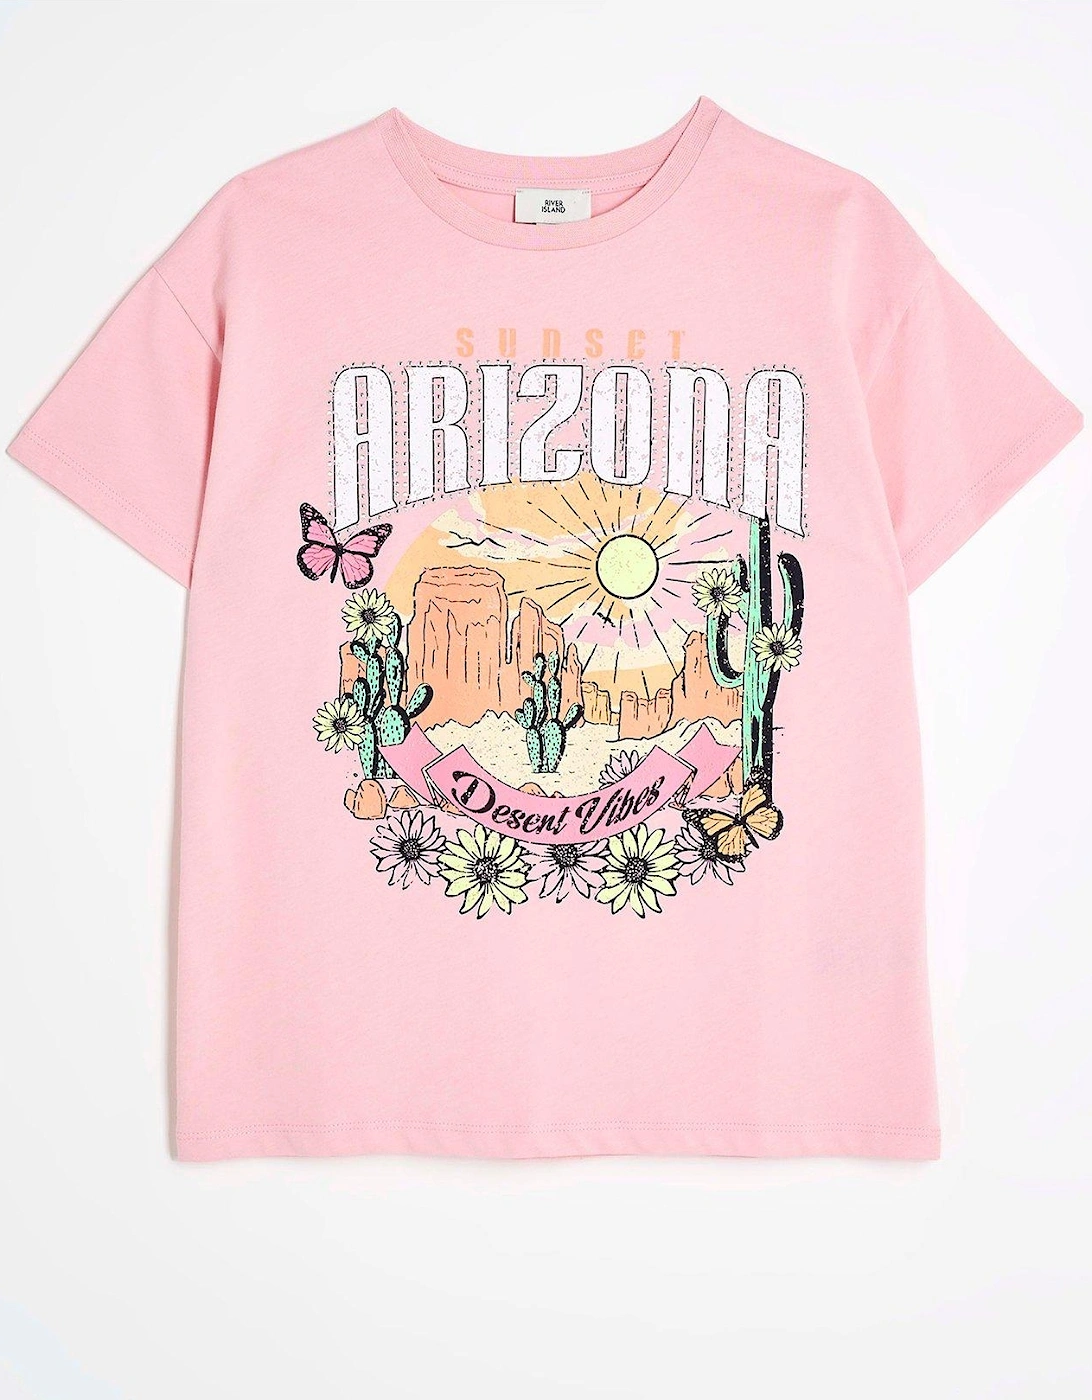 Girls Arizona Graphic T-shirt - Pink, 2 of 1